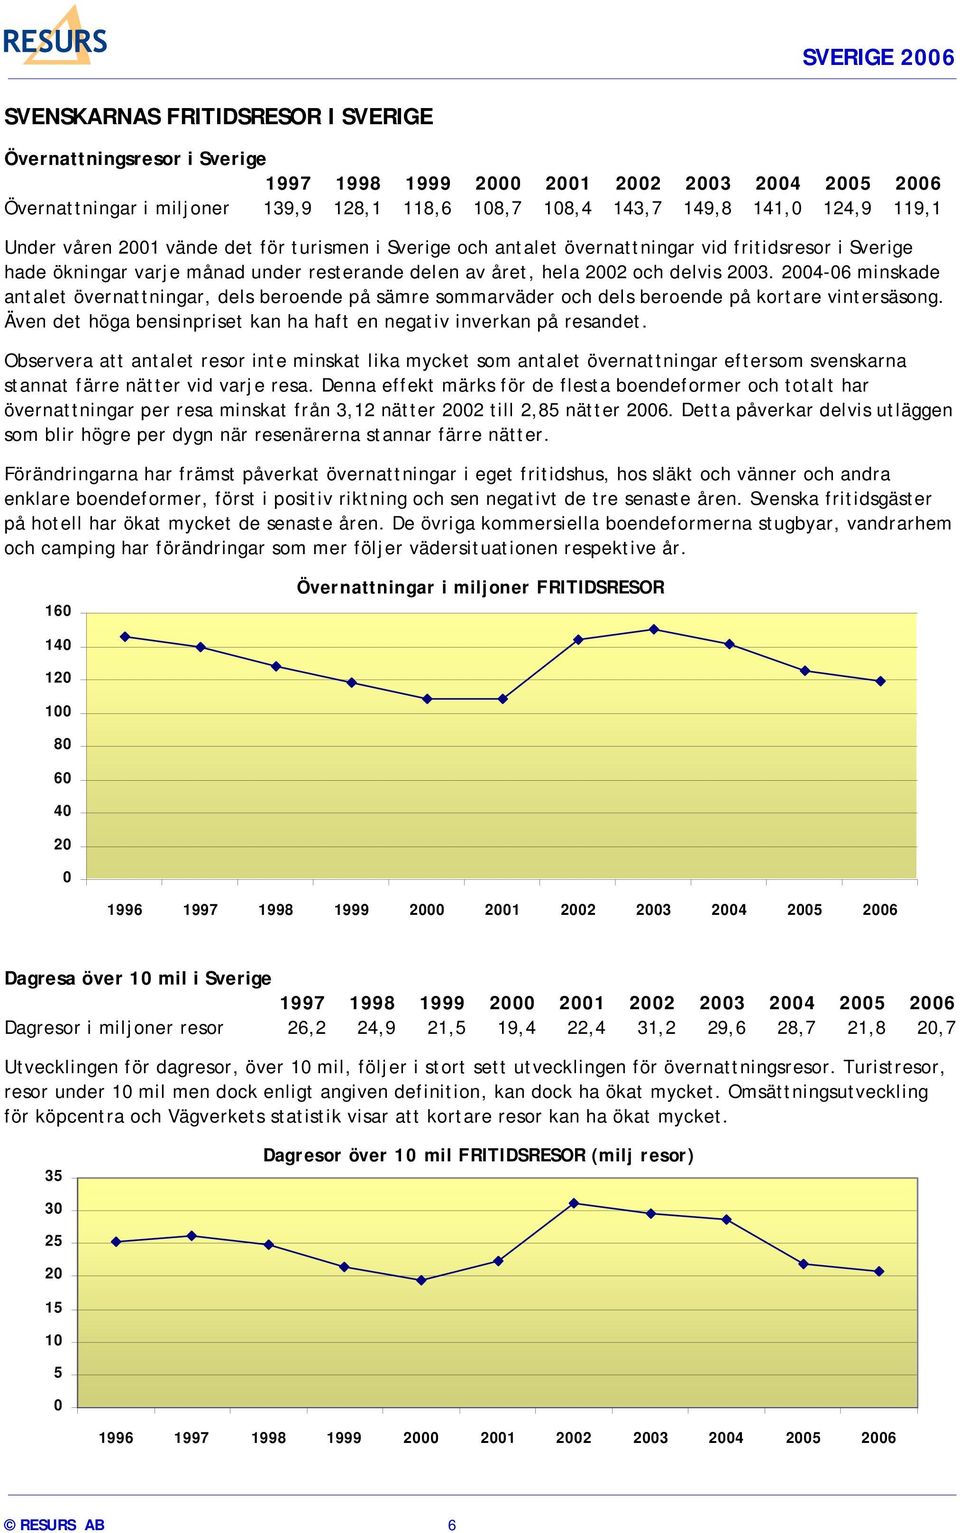 2004-06 minskade antalet övernattningar, dels beroende på sämre sommarväder och dels beroende på kortare vintersäsong. Även det höga bensinpriset kan ha haft en negativ inverkan på resandet.